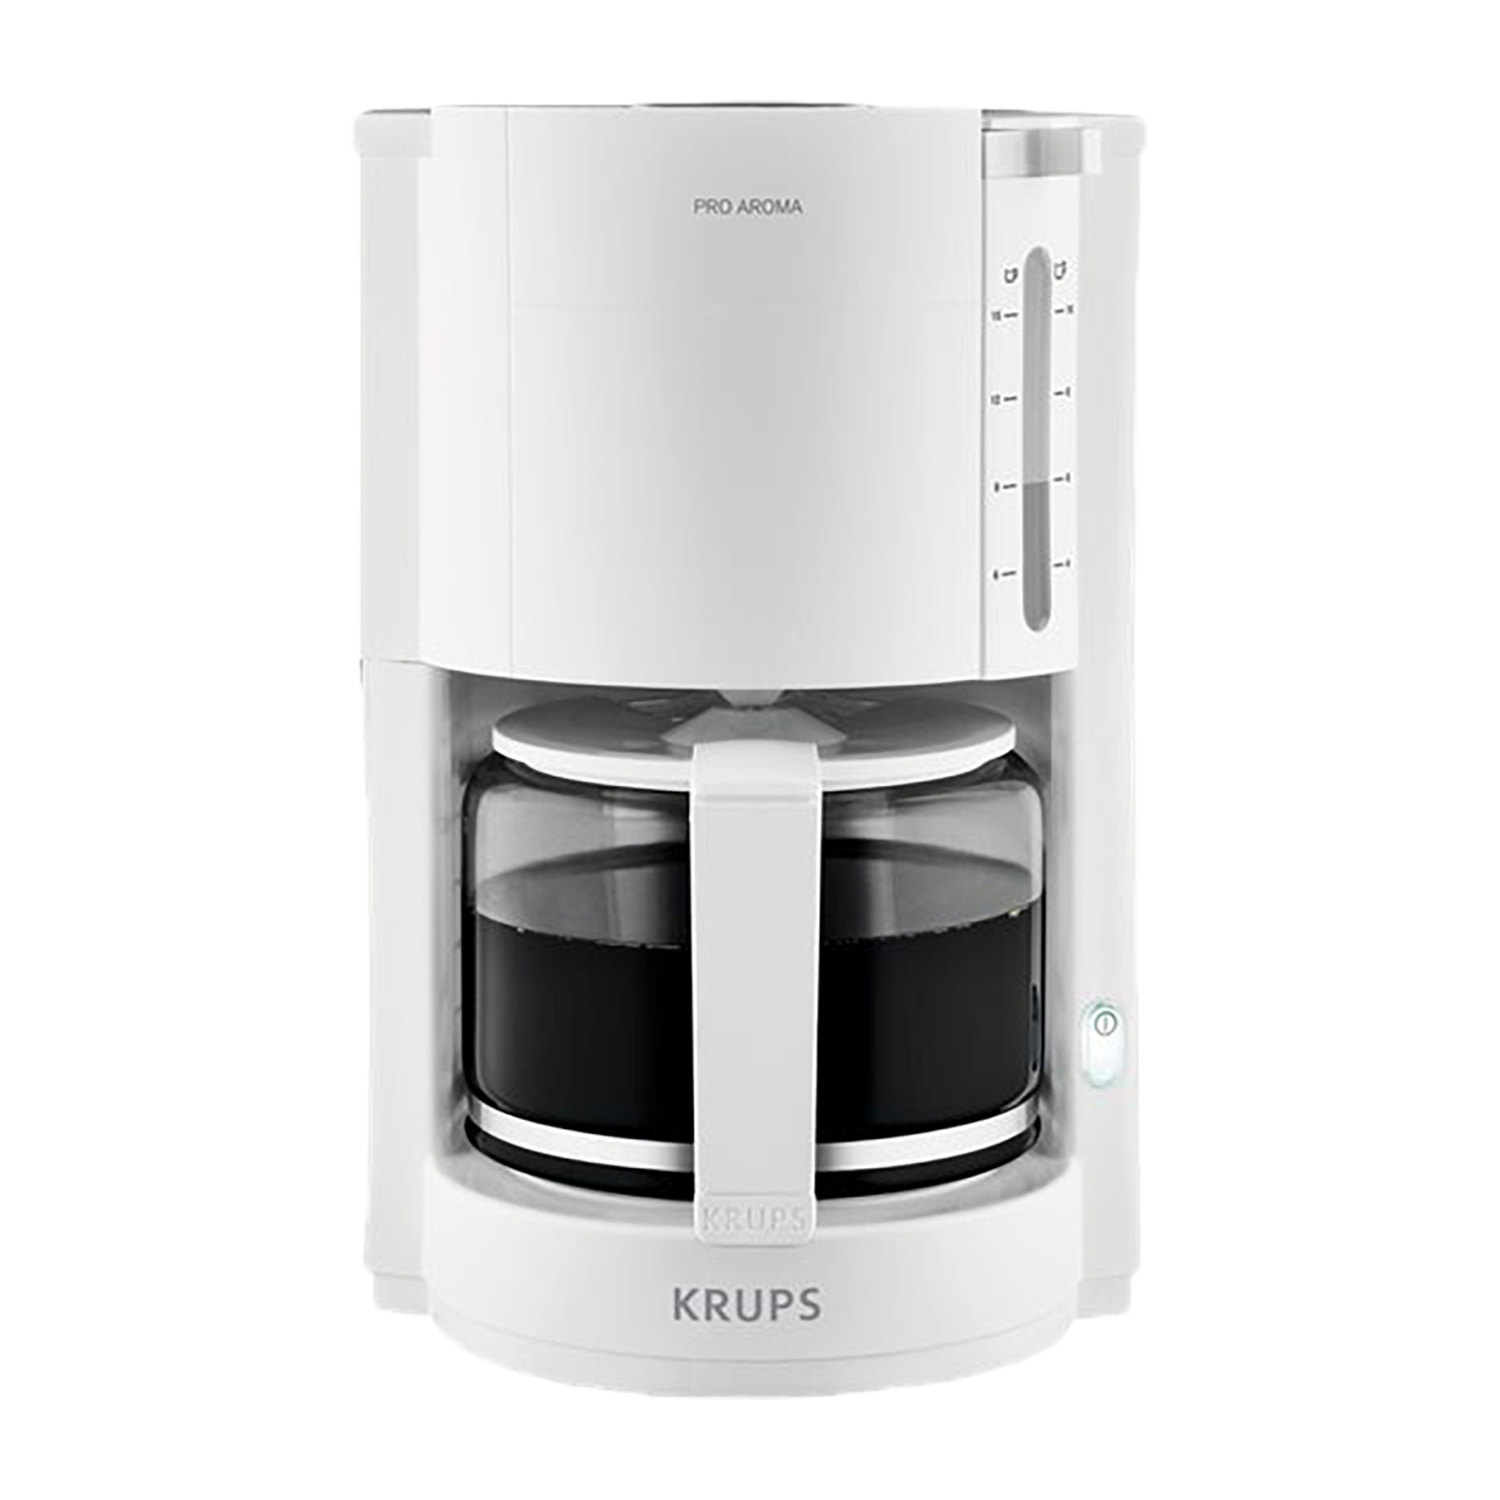 Krups F 309 01 ProAroma Drip Coffee Maker